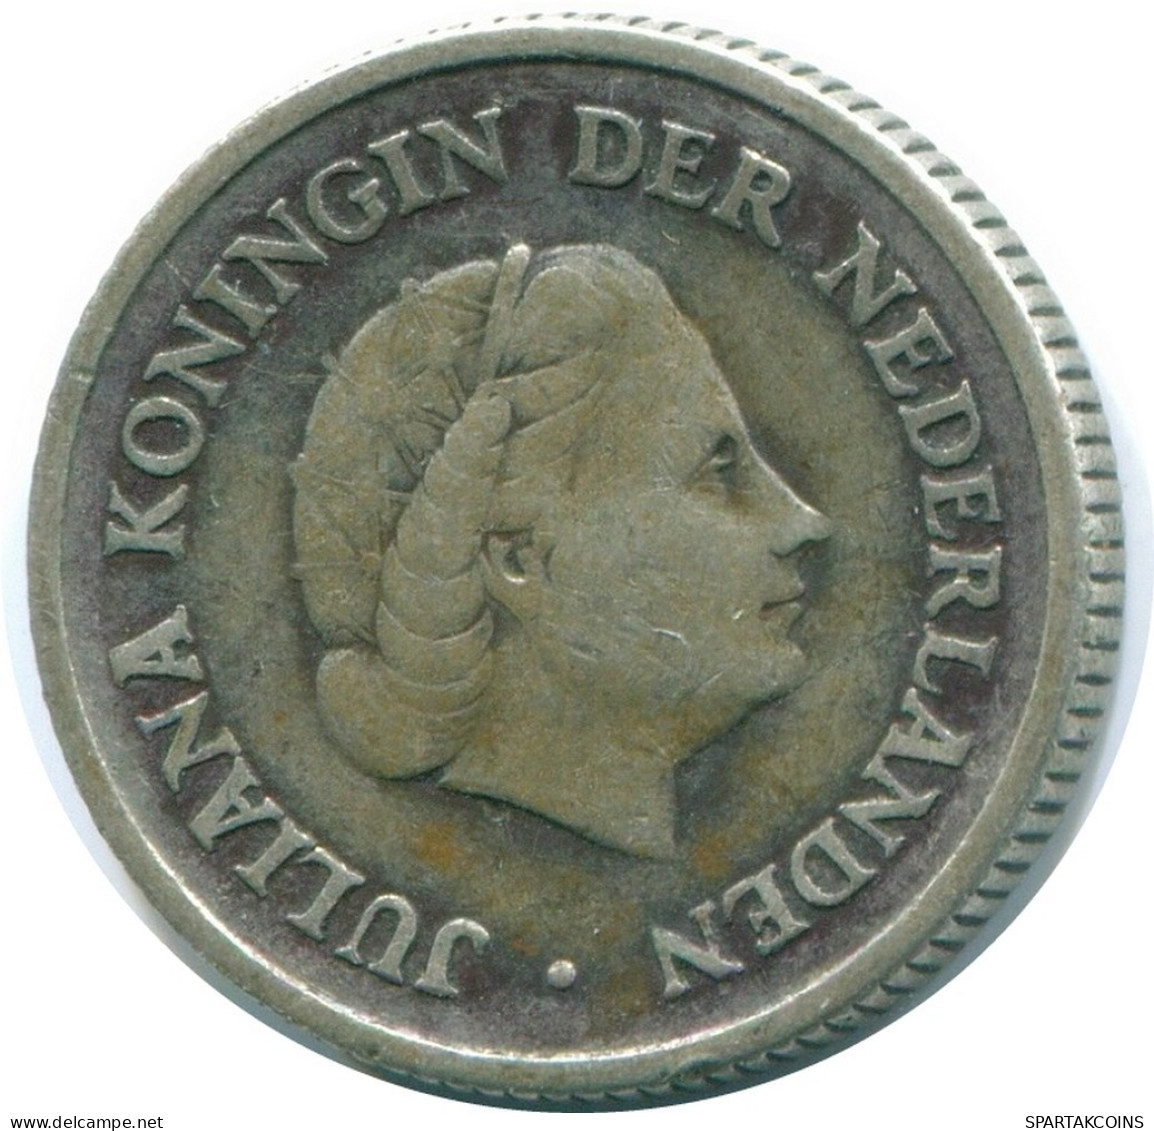 1/4 GULDEN 1956 NIEDERLÄNDISCHE ANTILLEN SILBER Koloniale Münze #NL10940.4.D.A - Antilles Néerlandaises